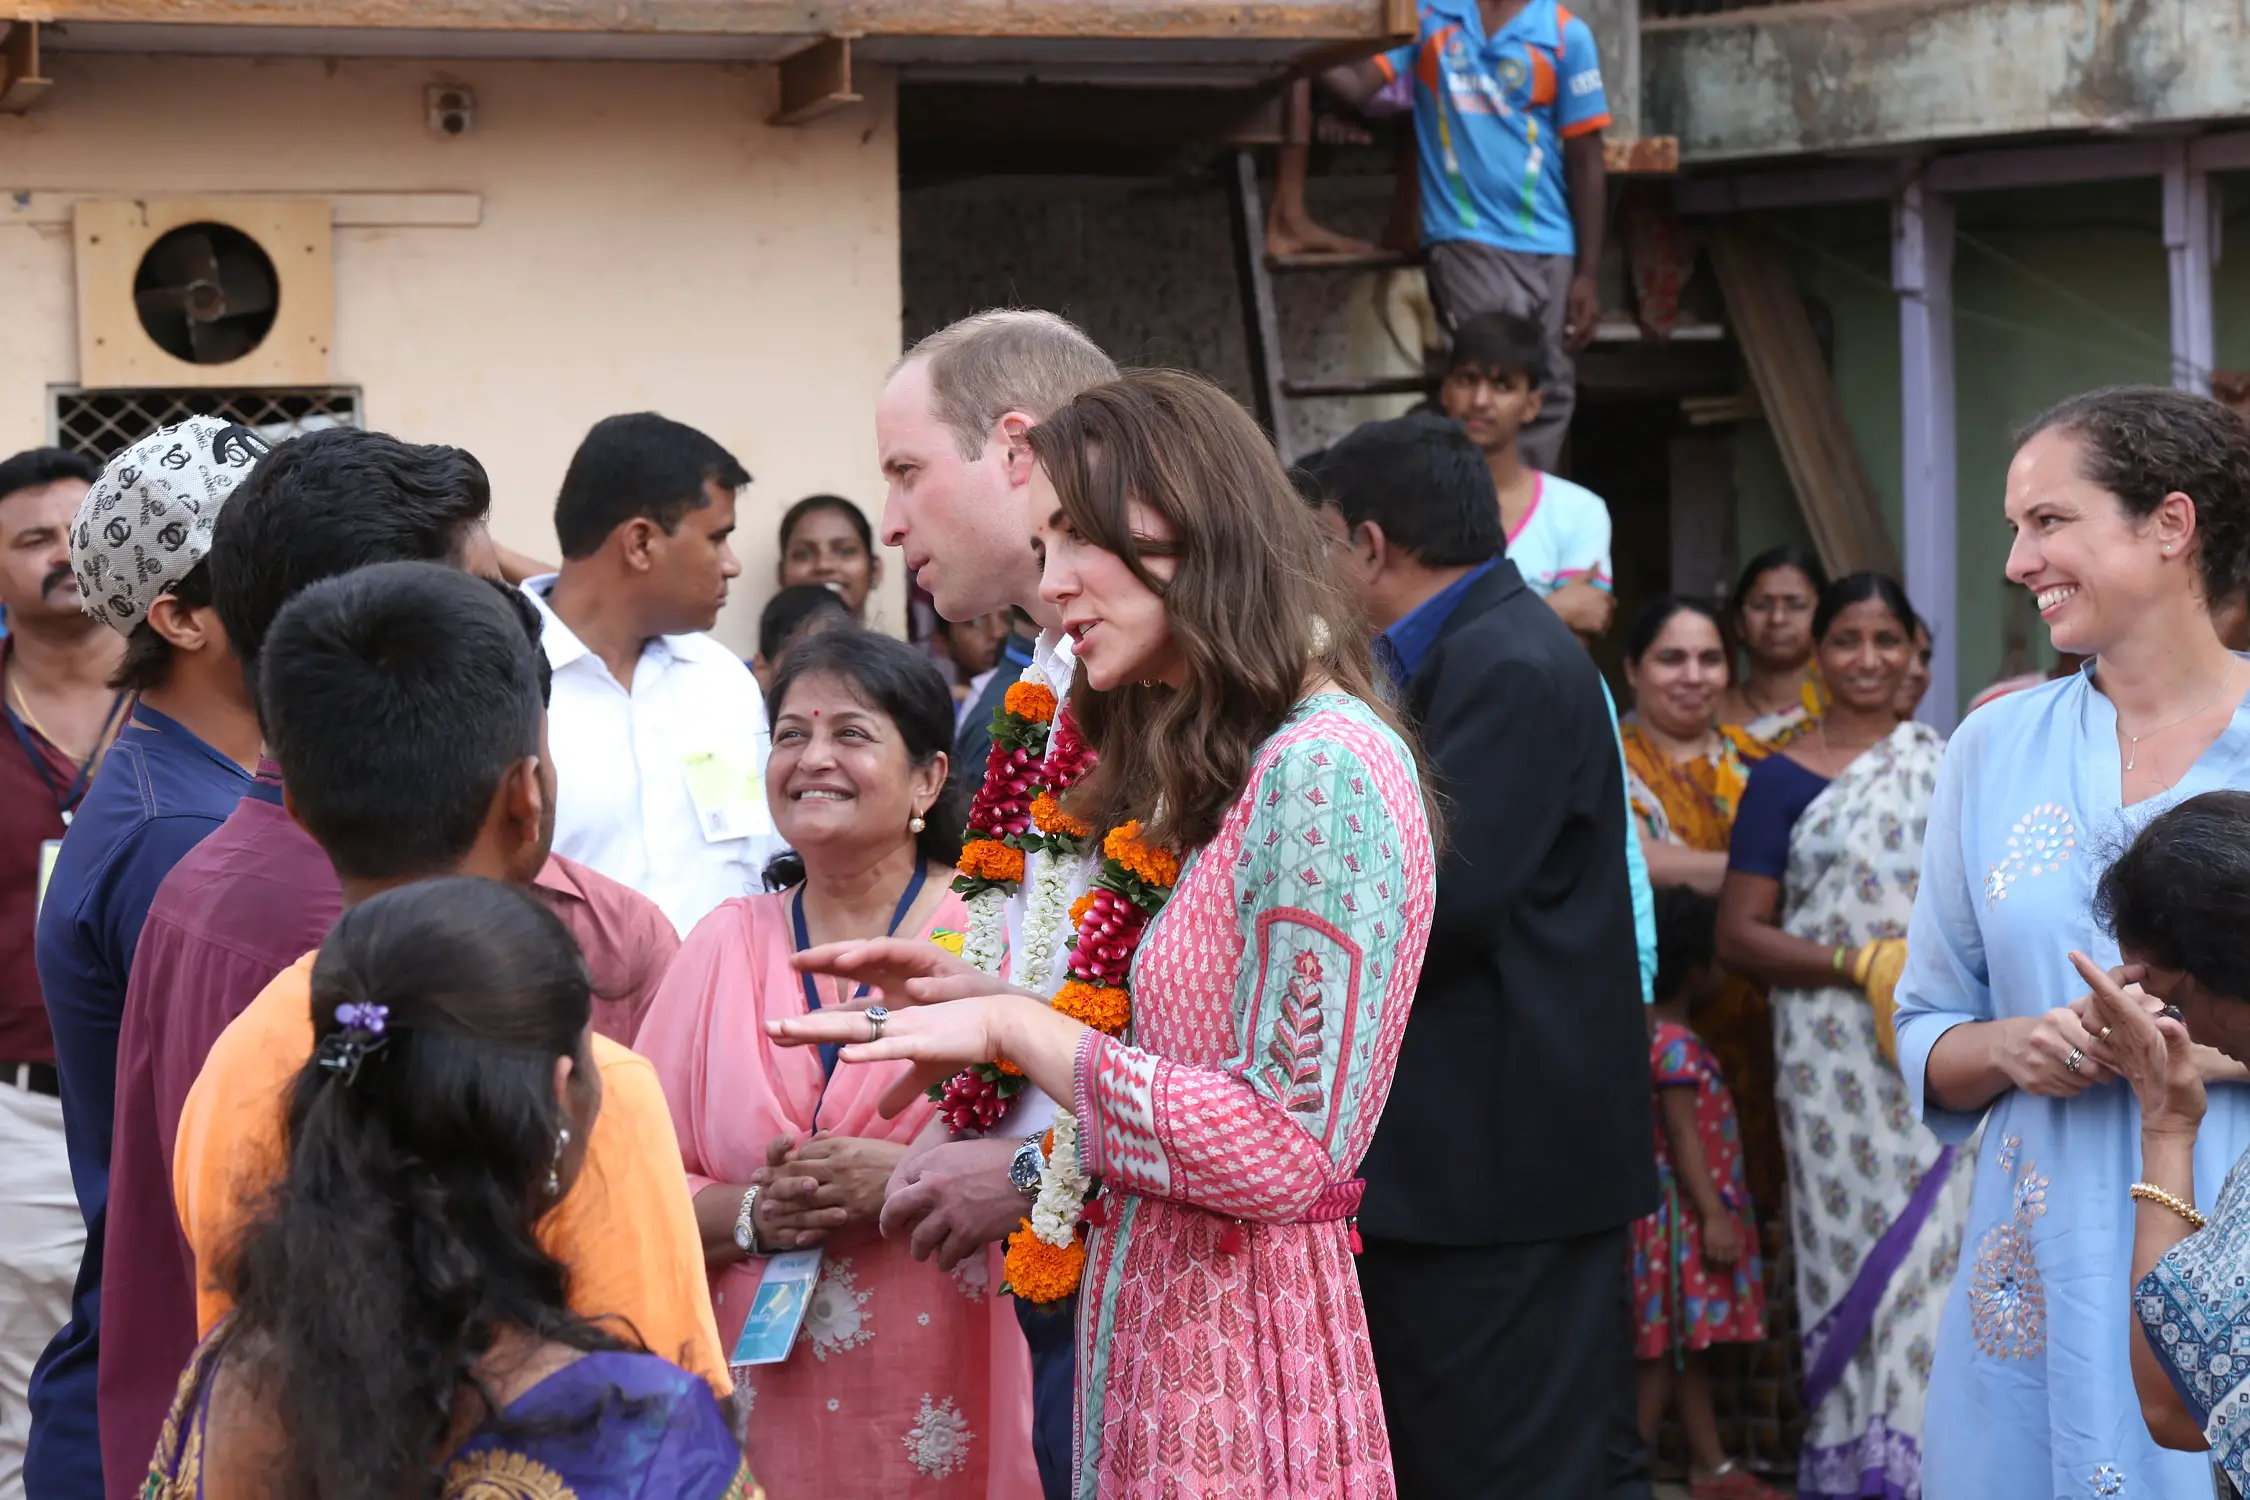 The Duke and Duchess of Cambridge visited the slum area in Mumbai India